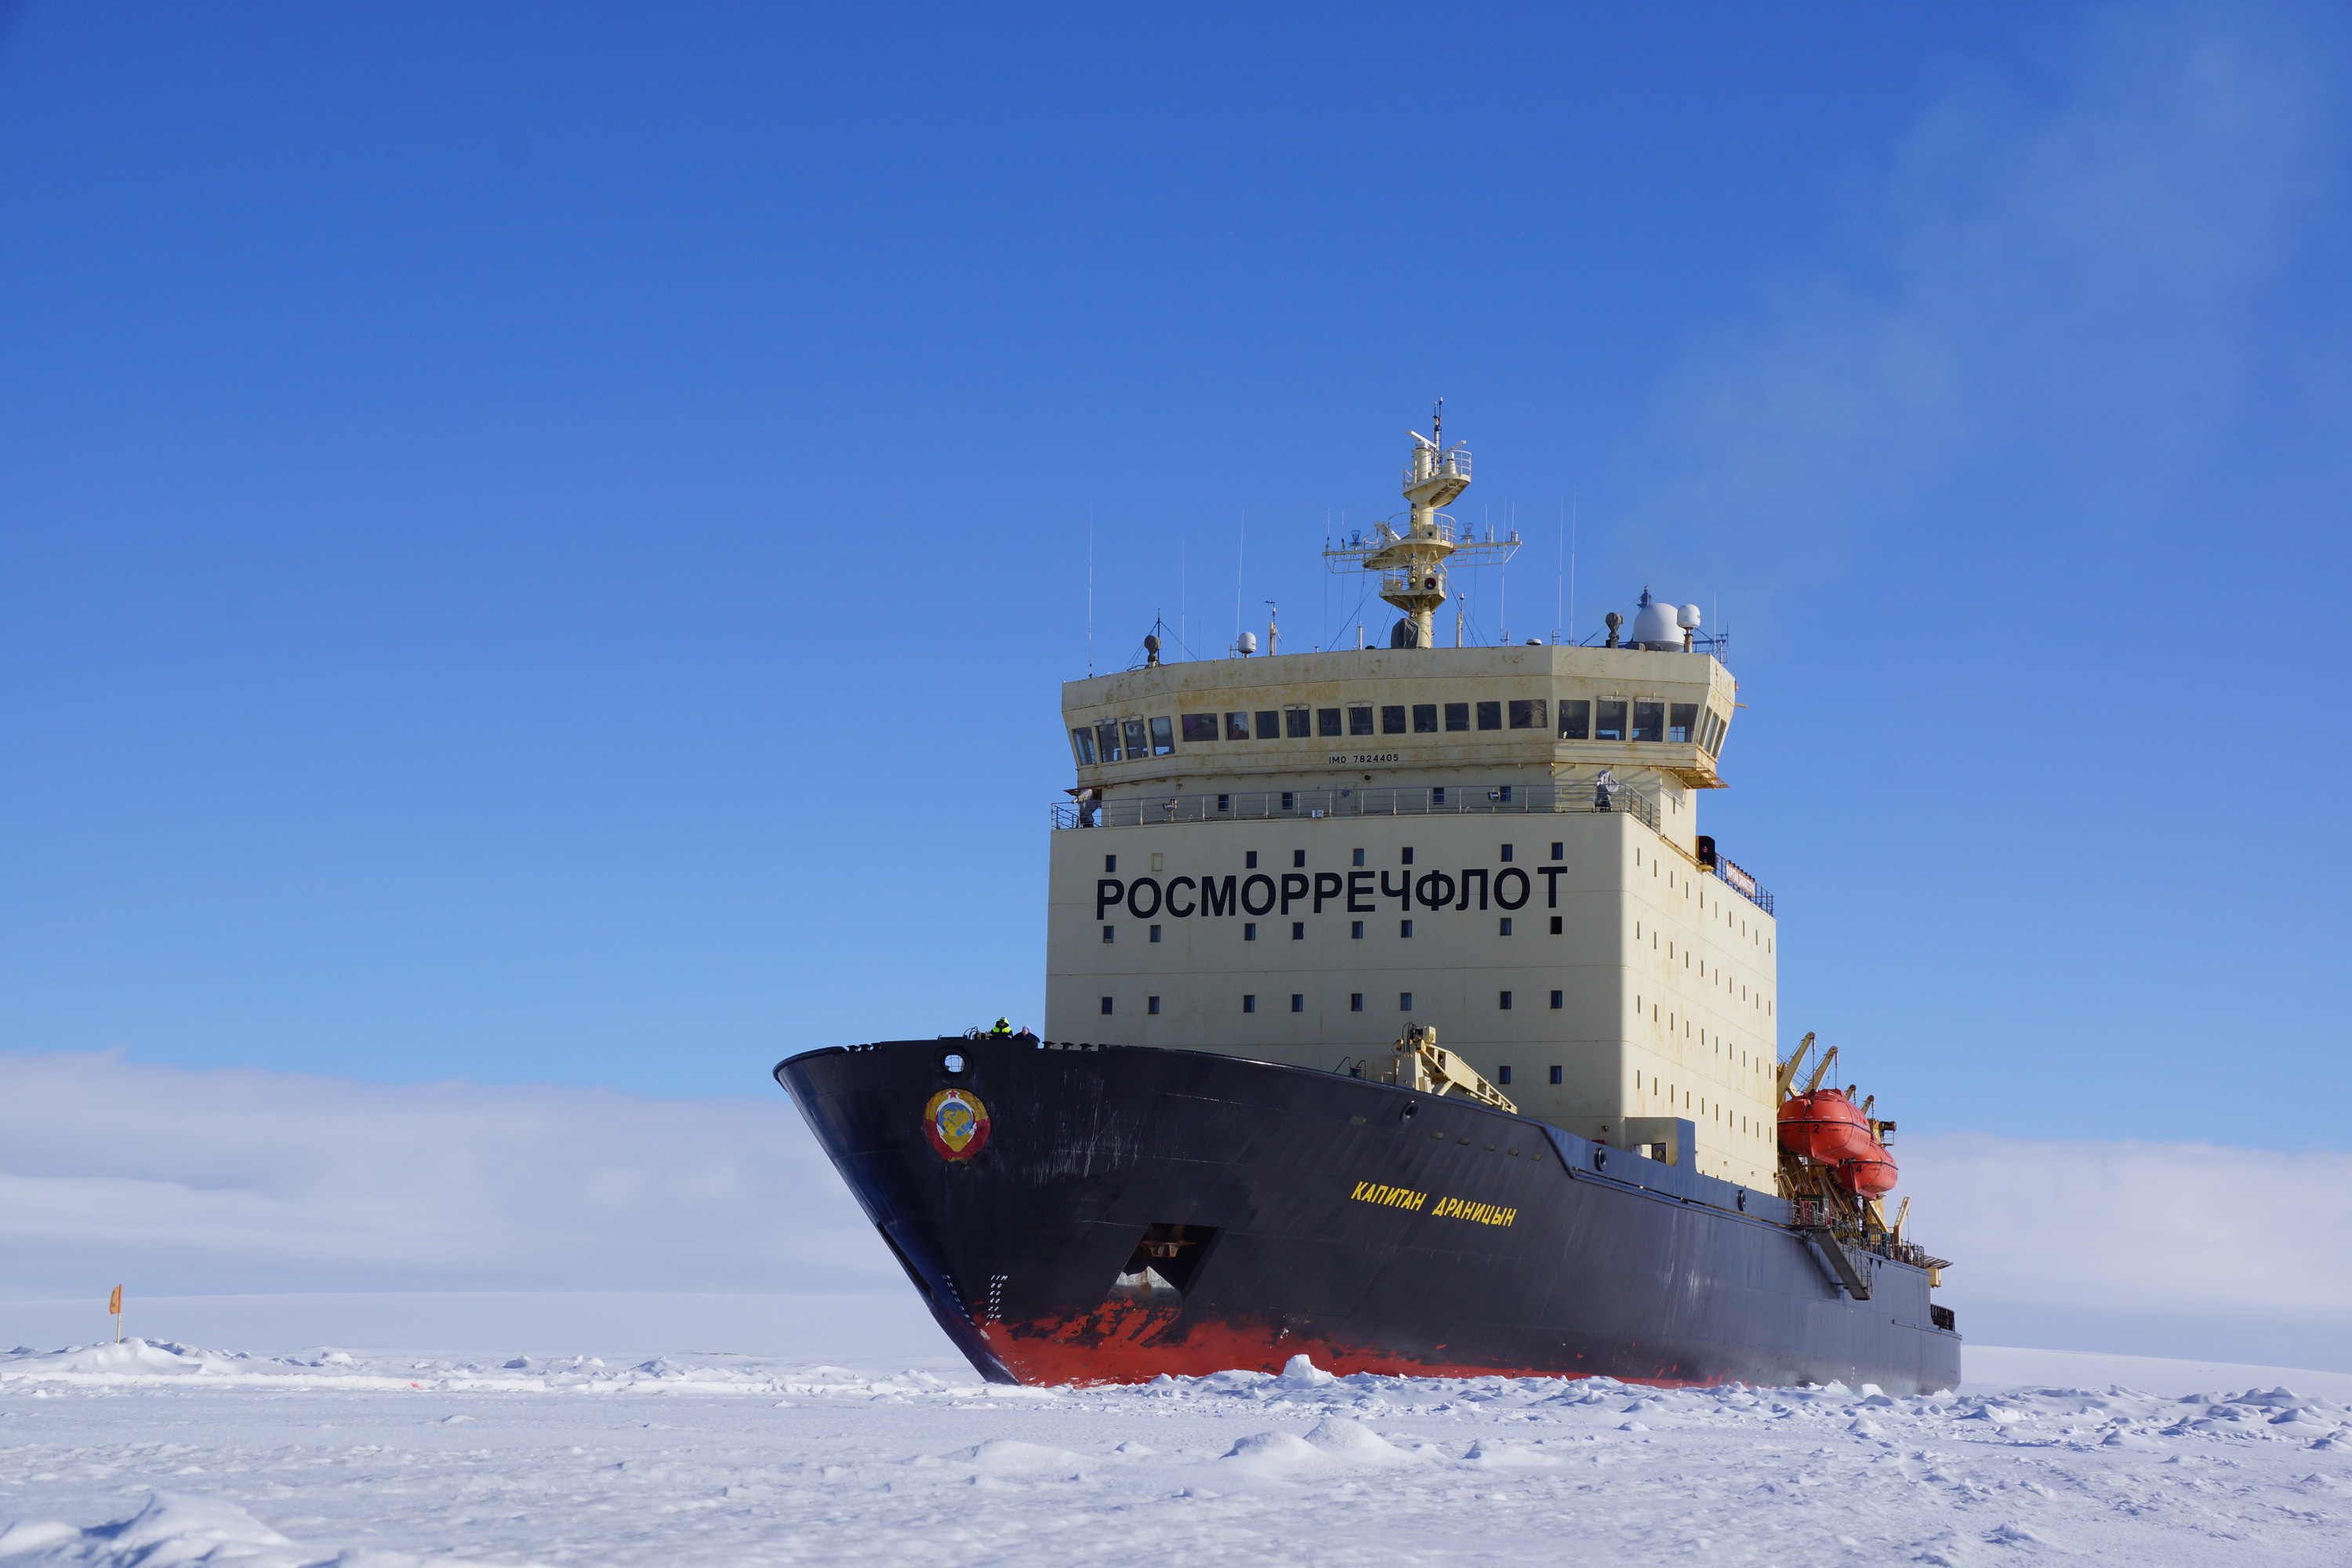 Огромные ледоколы нужны, чтобы прокладывать путь остальным судам, — настолько толстый лед в Арктике